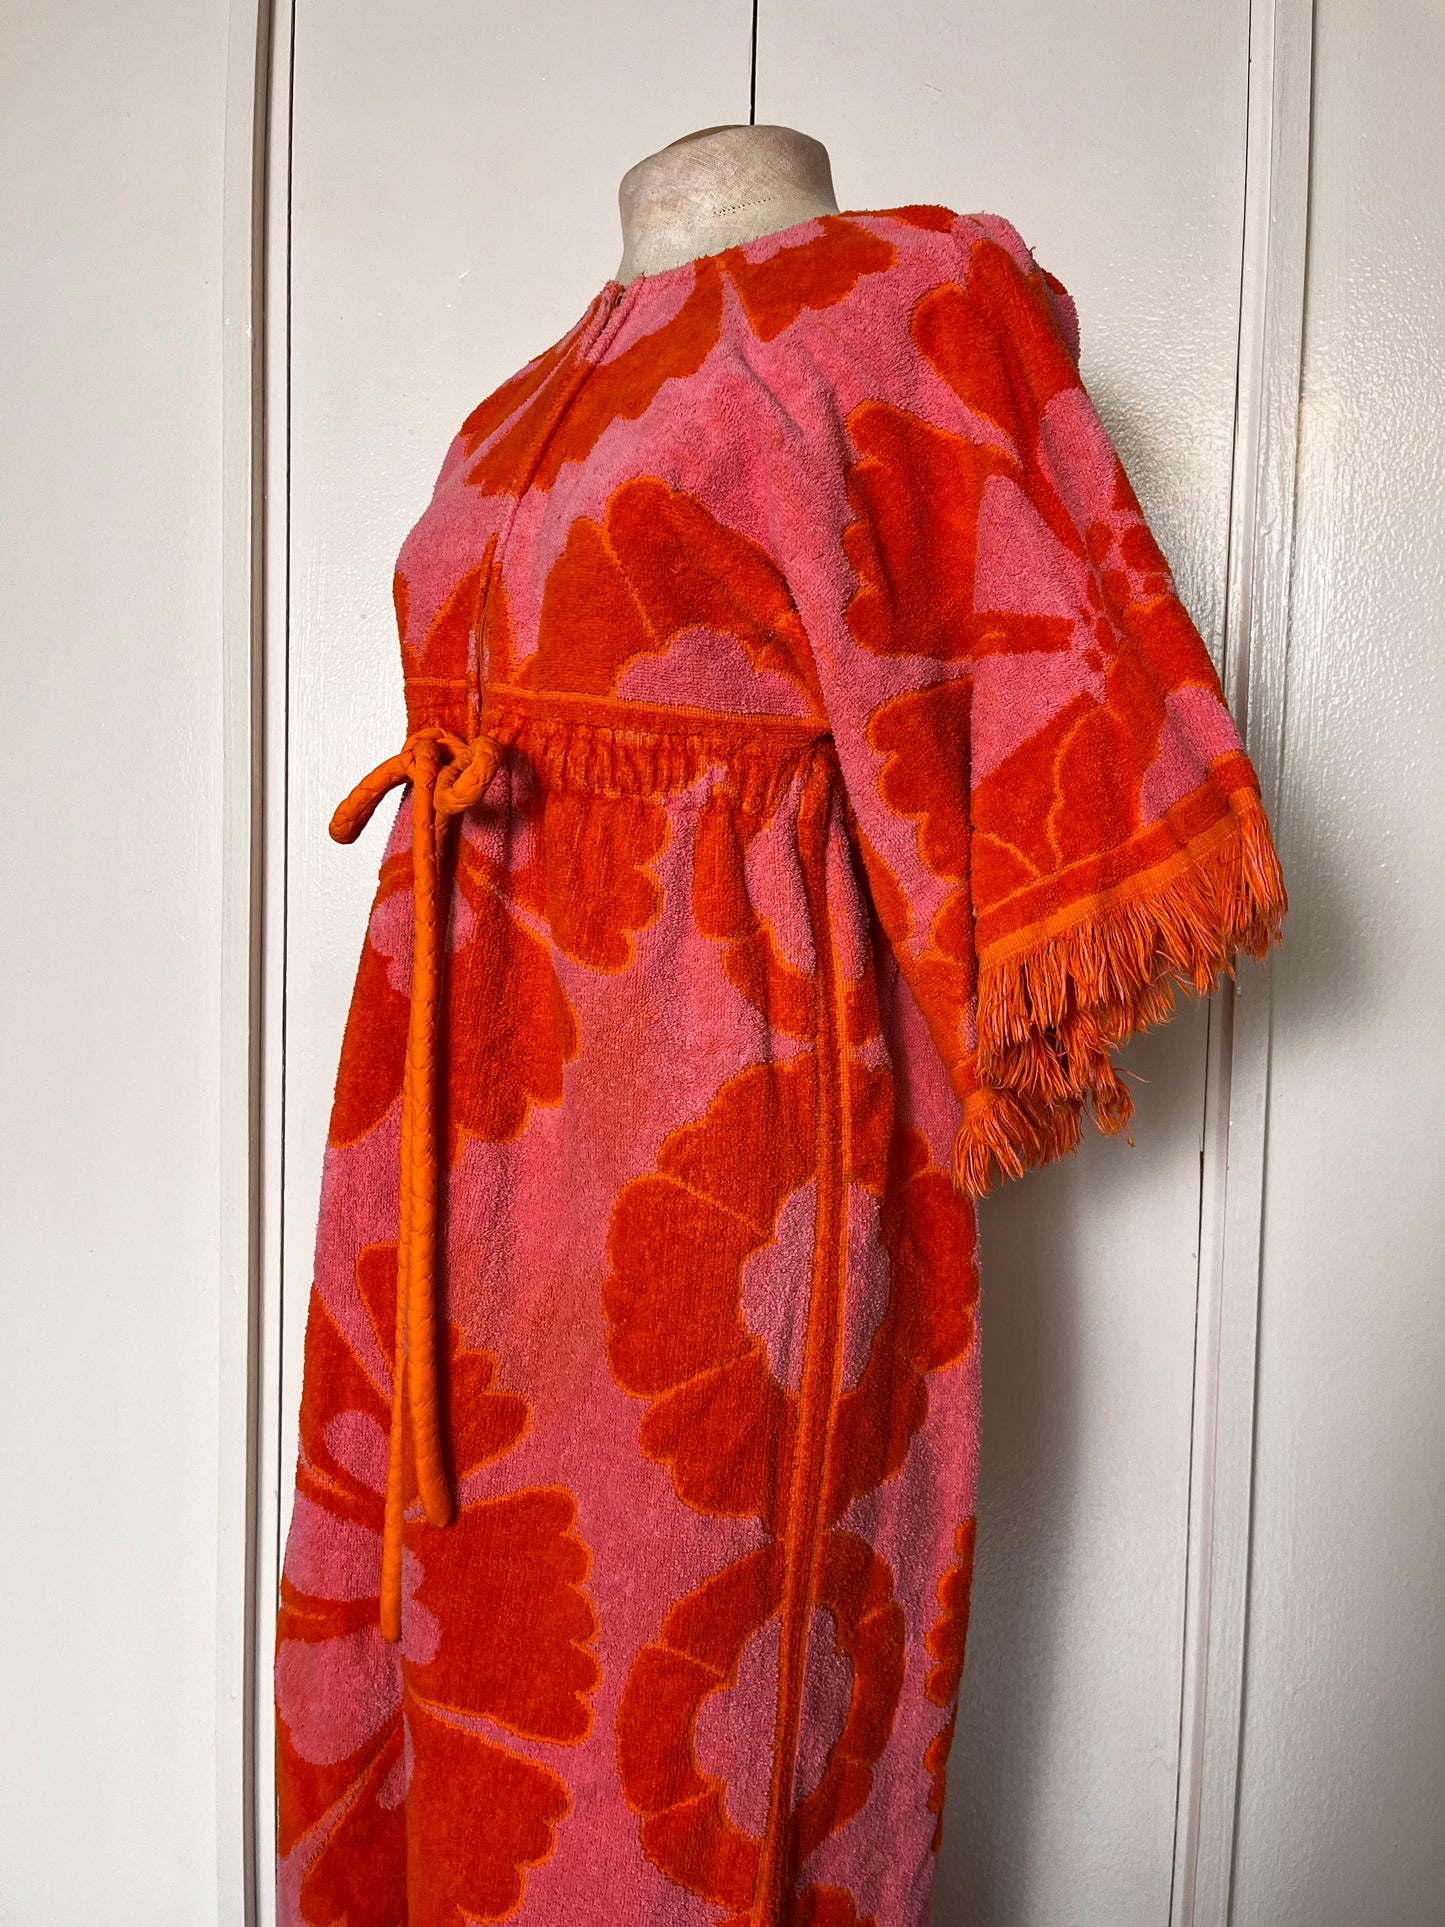 Vintage 1960's "Stevens Utica" Caftan Towel Dress